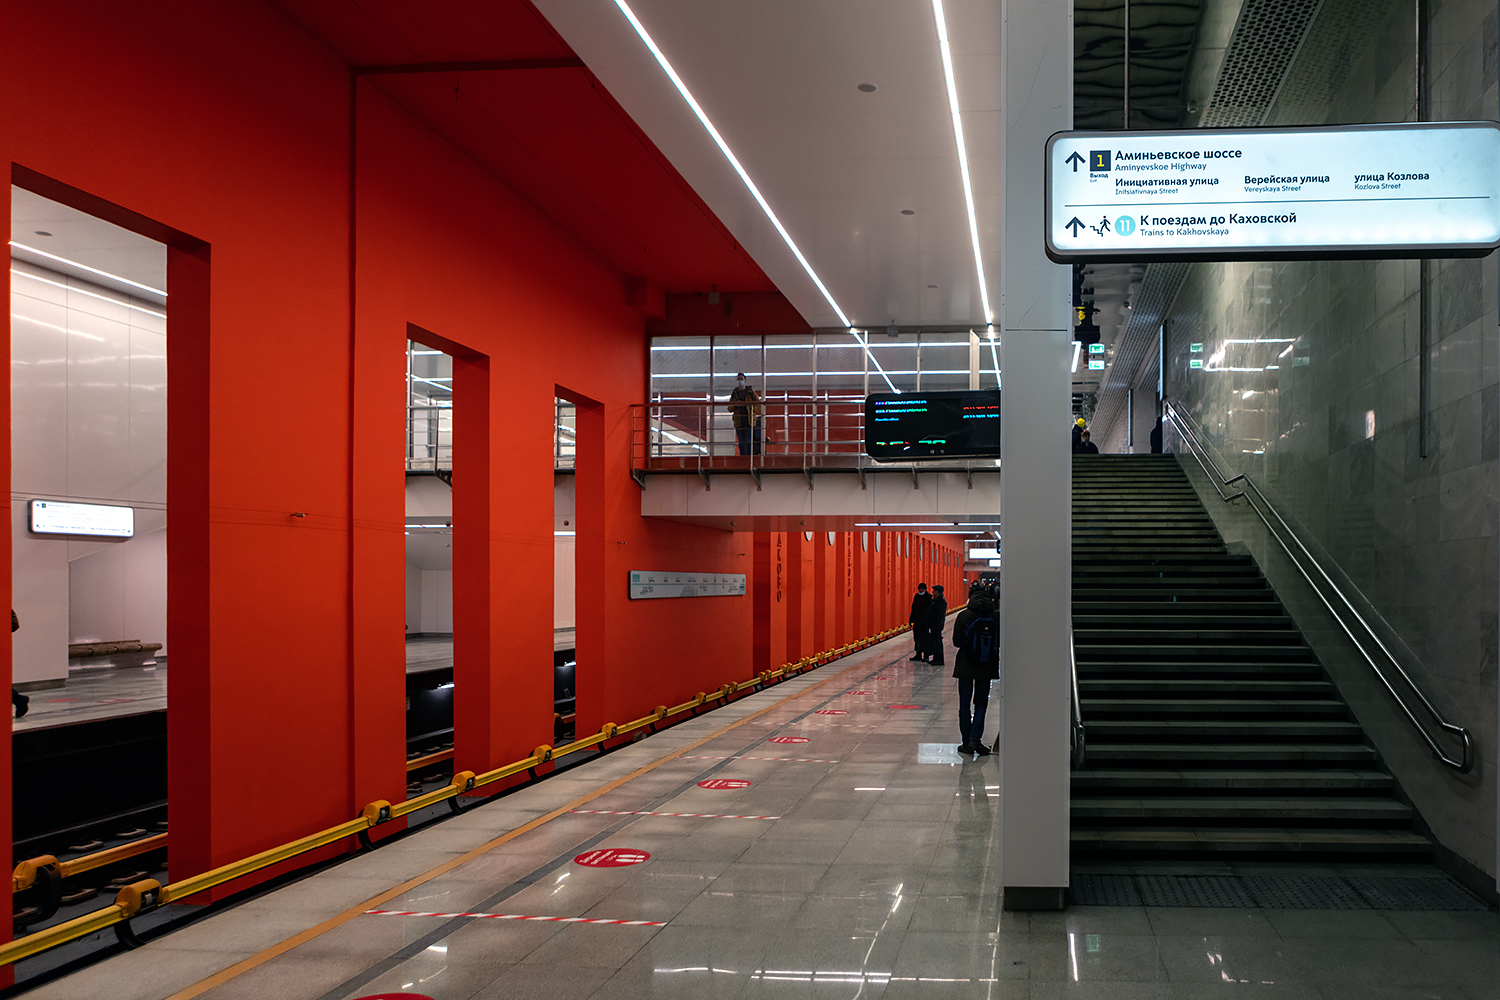 Moskva — Metropolitain — [11] Bol'shaya Koltsevaya Line; Moskva — Opening of stations on the Bolshaya Koltsevaya line on the Mnyovniki — Kakhovskaya section on 07/12/2021